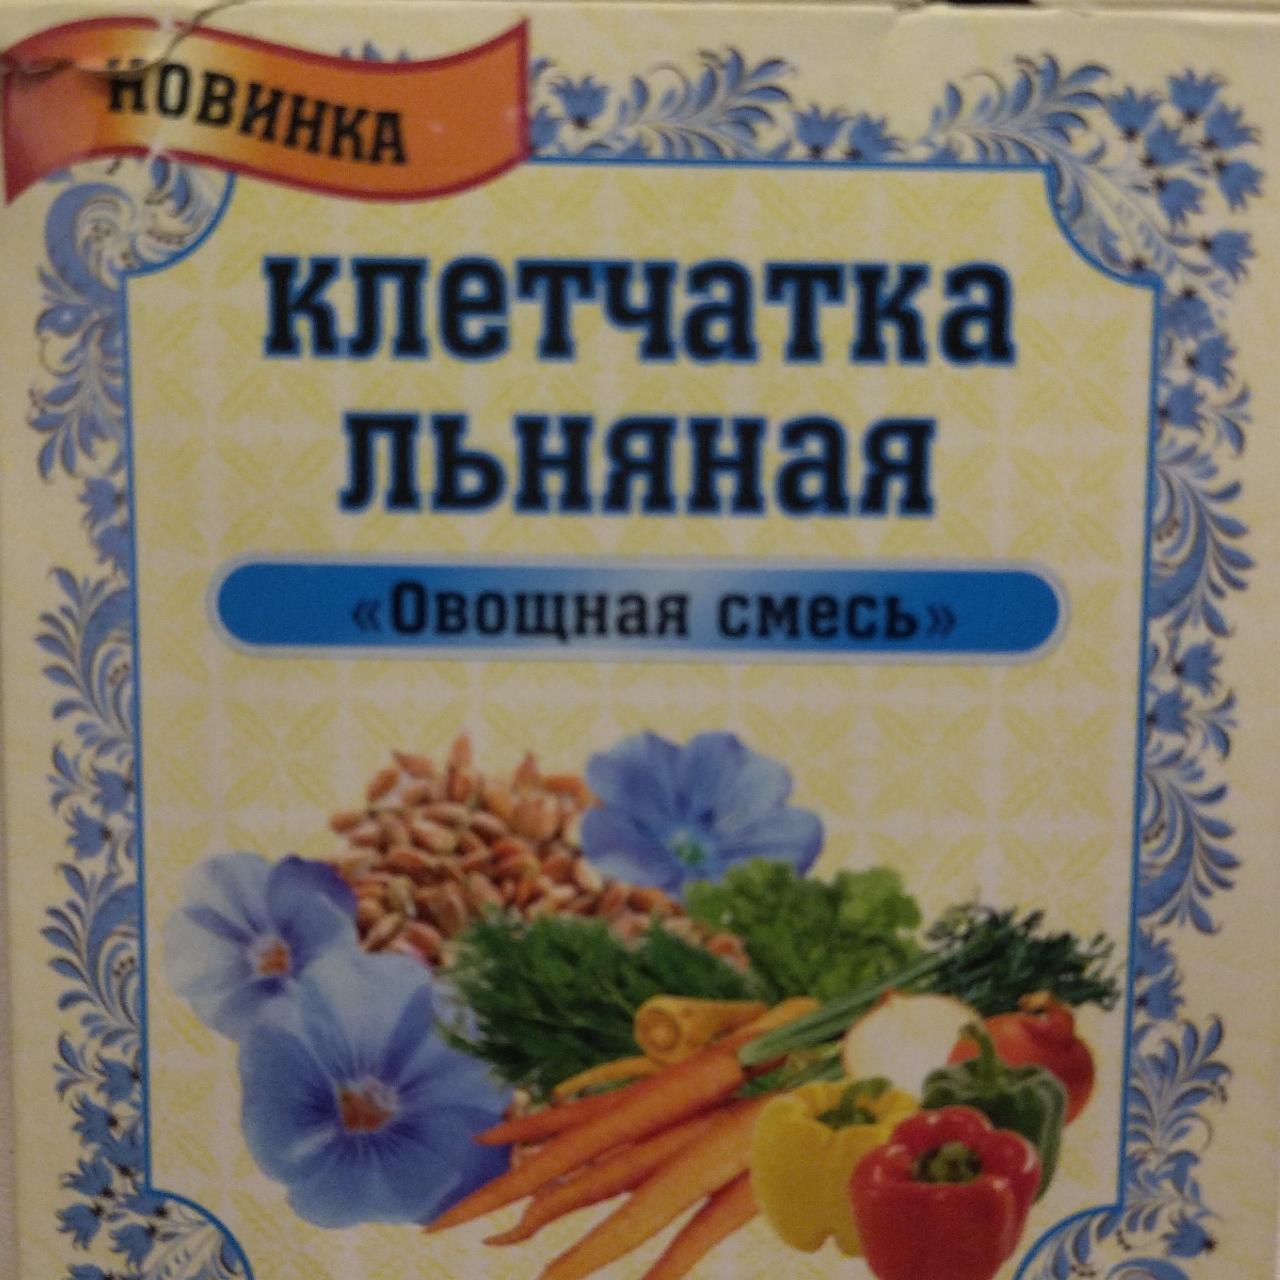 Фото - Клетчатка льняная Овощная смесь Злаки Сибири СибТар